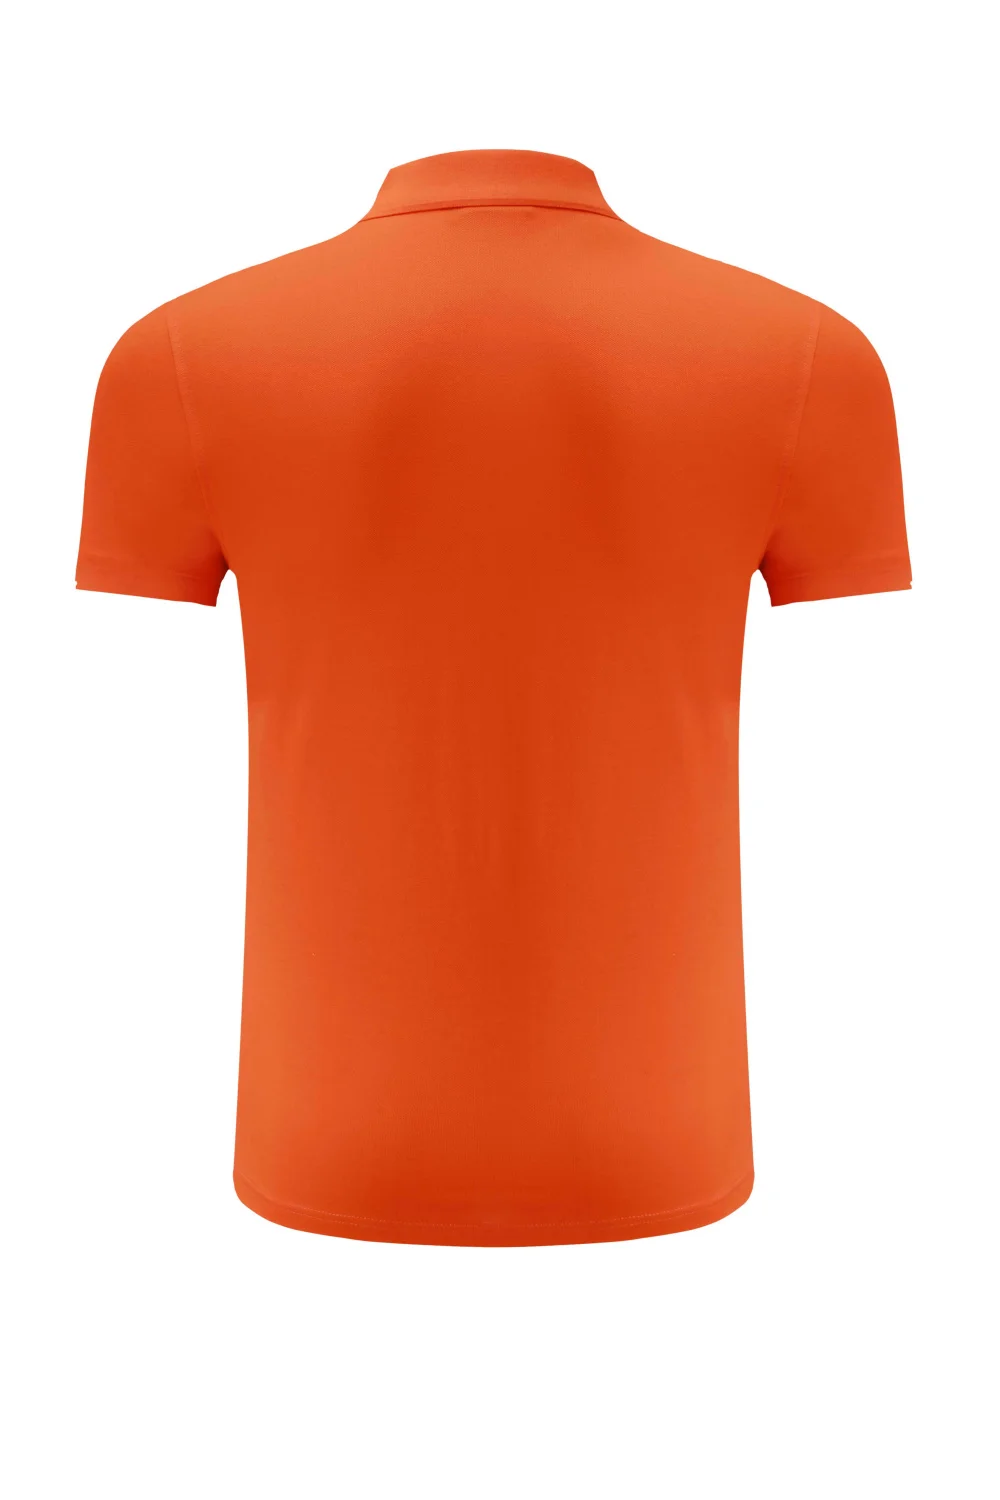 HAMAIKE quick-drying golf shirts for men/women golf Tee short-sleeved polos shirt outdoor sports running t-shirt sportswear